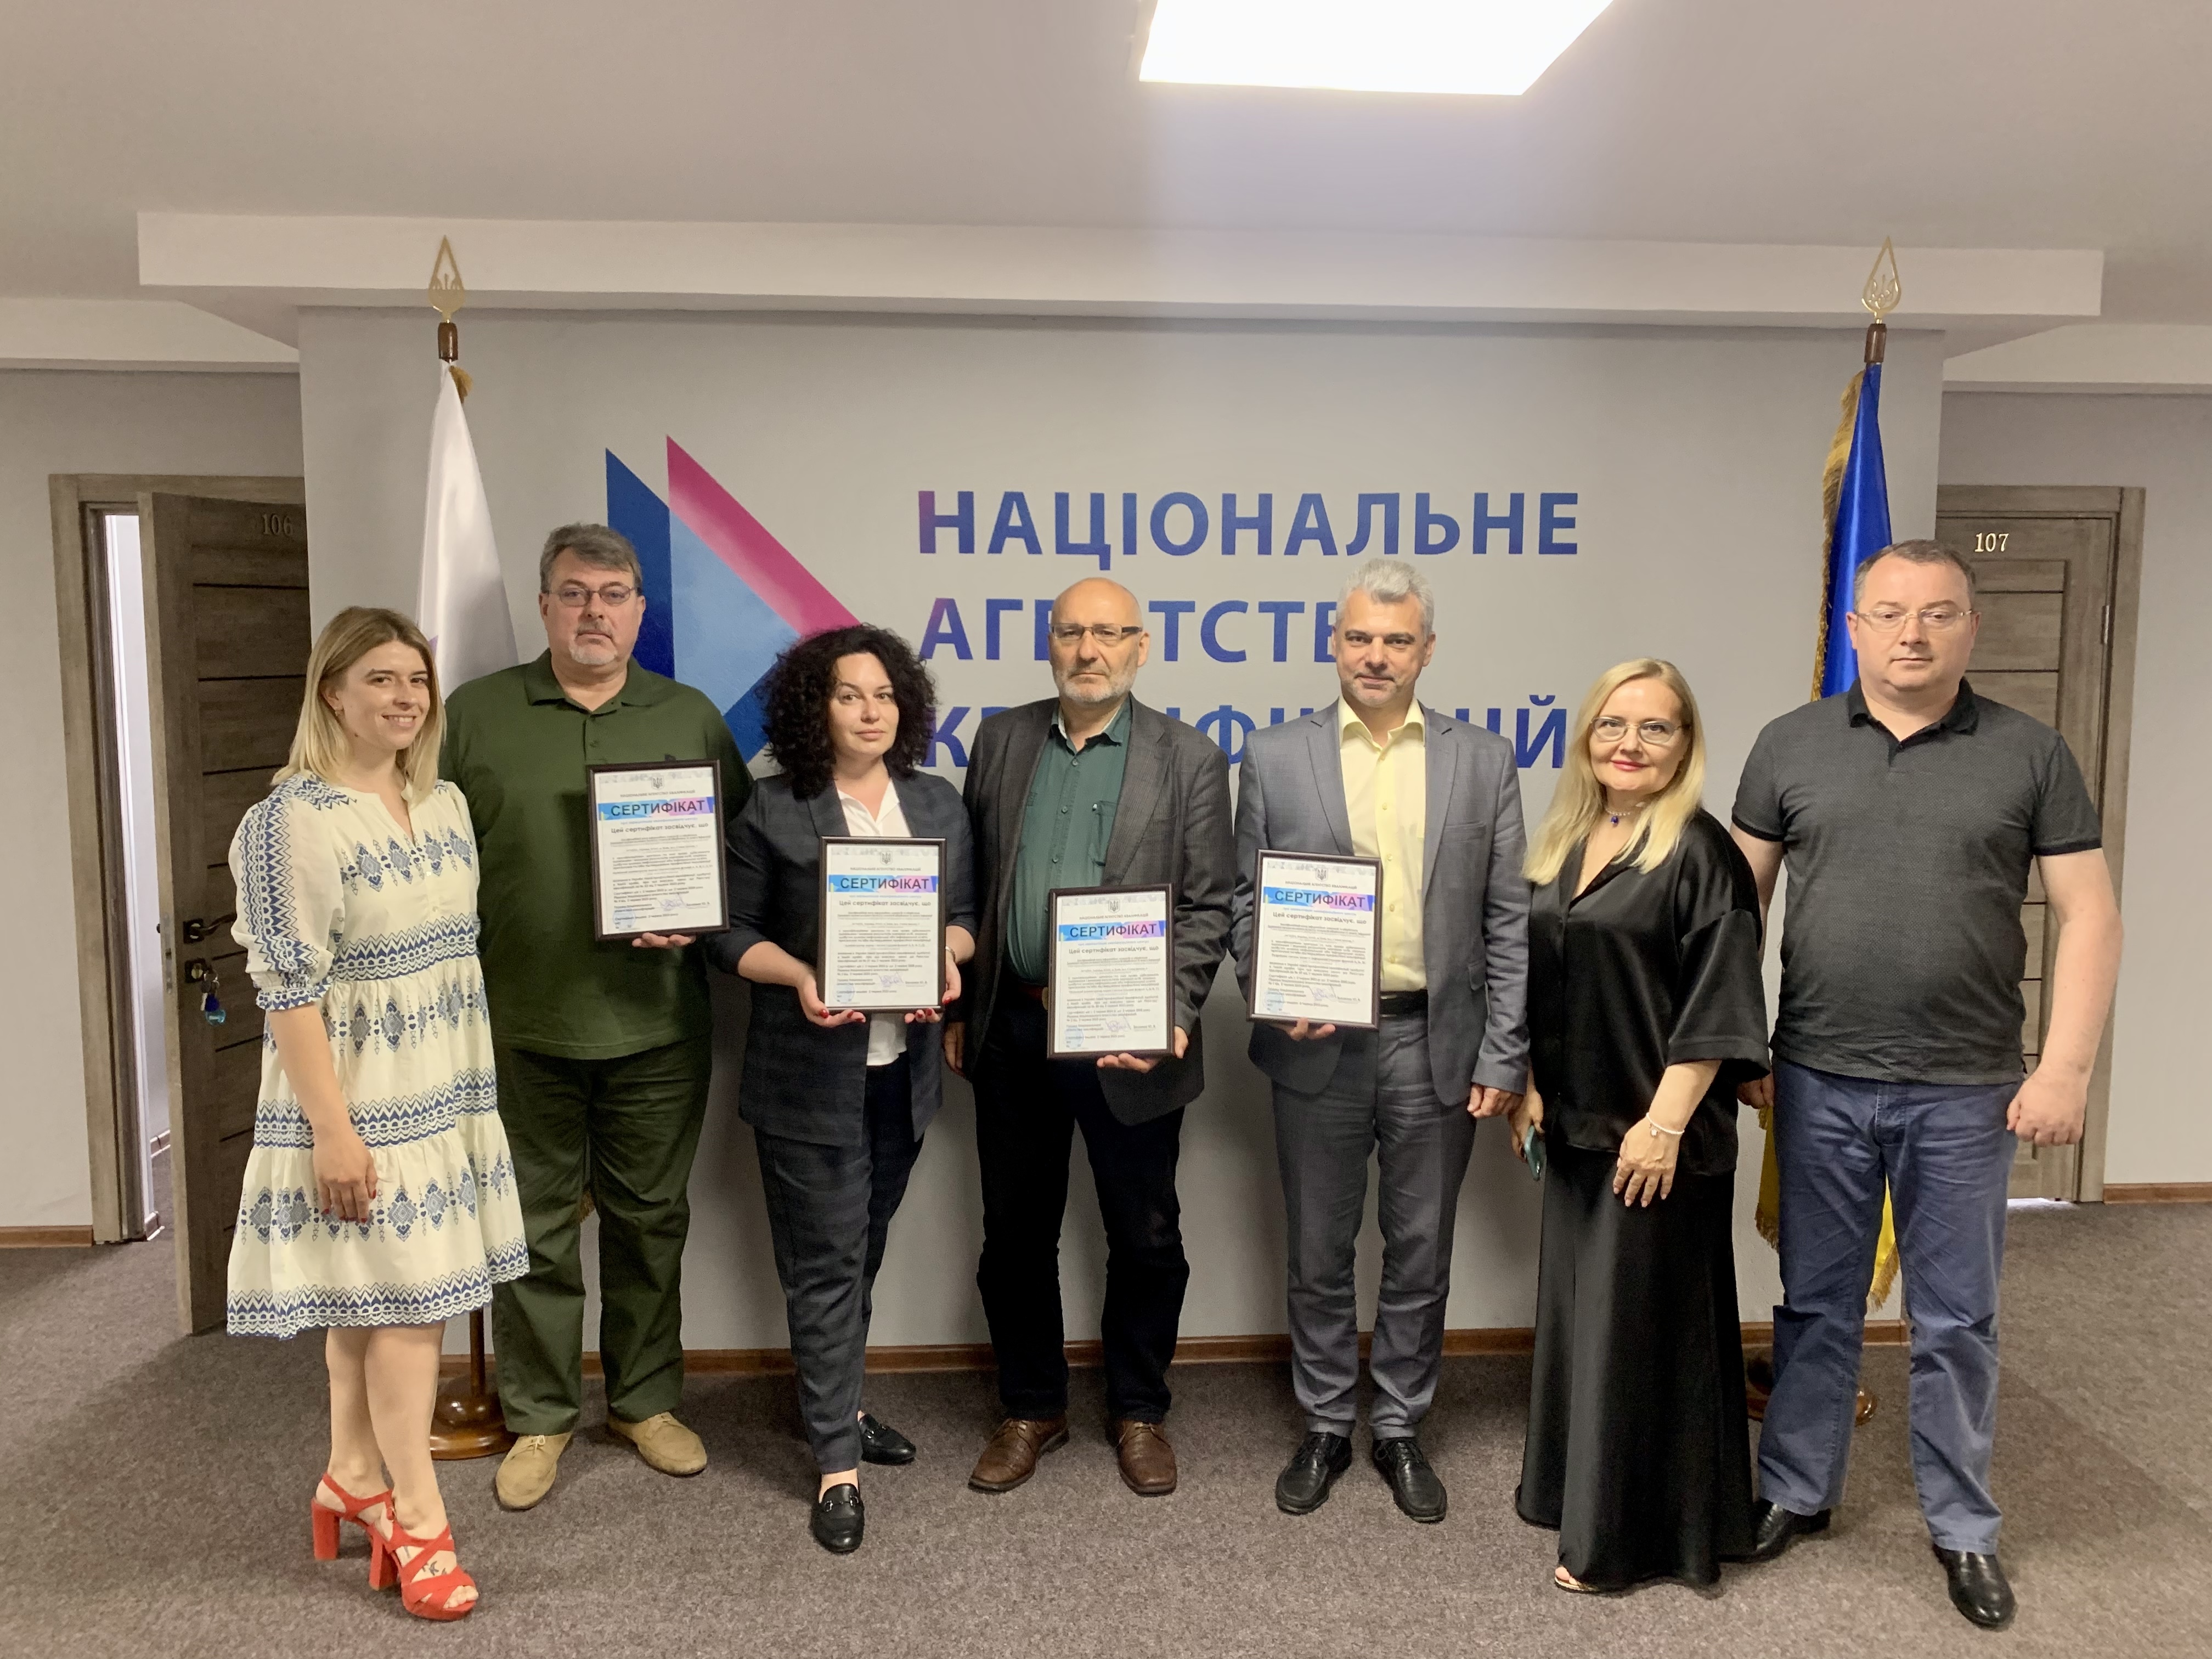 Вперше в Україні акредитований Кваліфікаційний центр ІТ та кібербезпеки